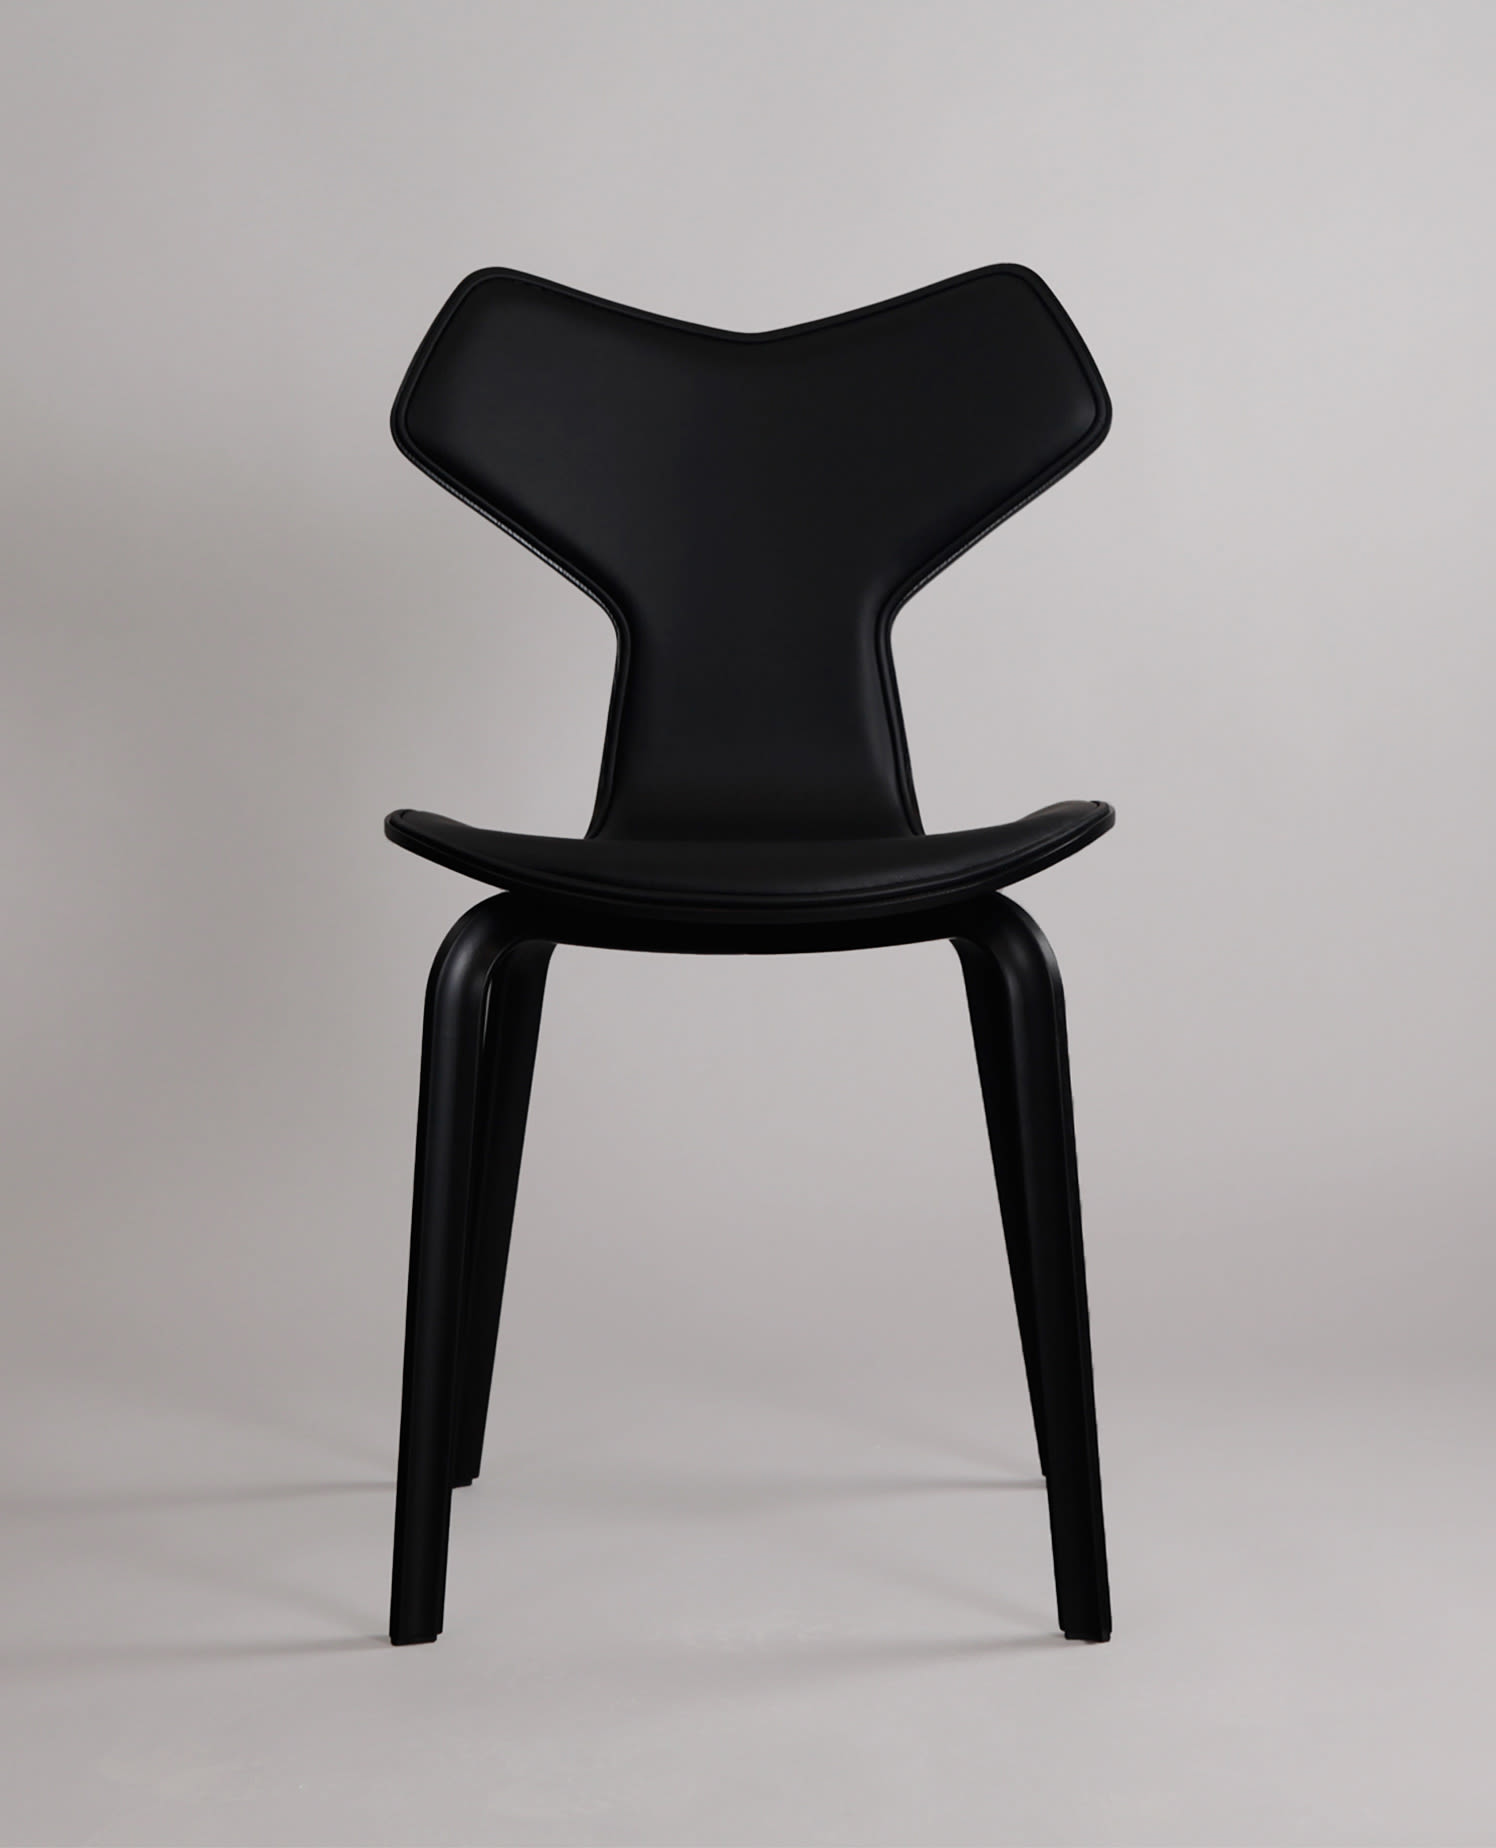 Editorial Splash 6 | Ikoniska stolar från Fritz Hansen – dansk design i sitt esse